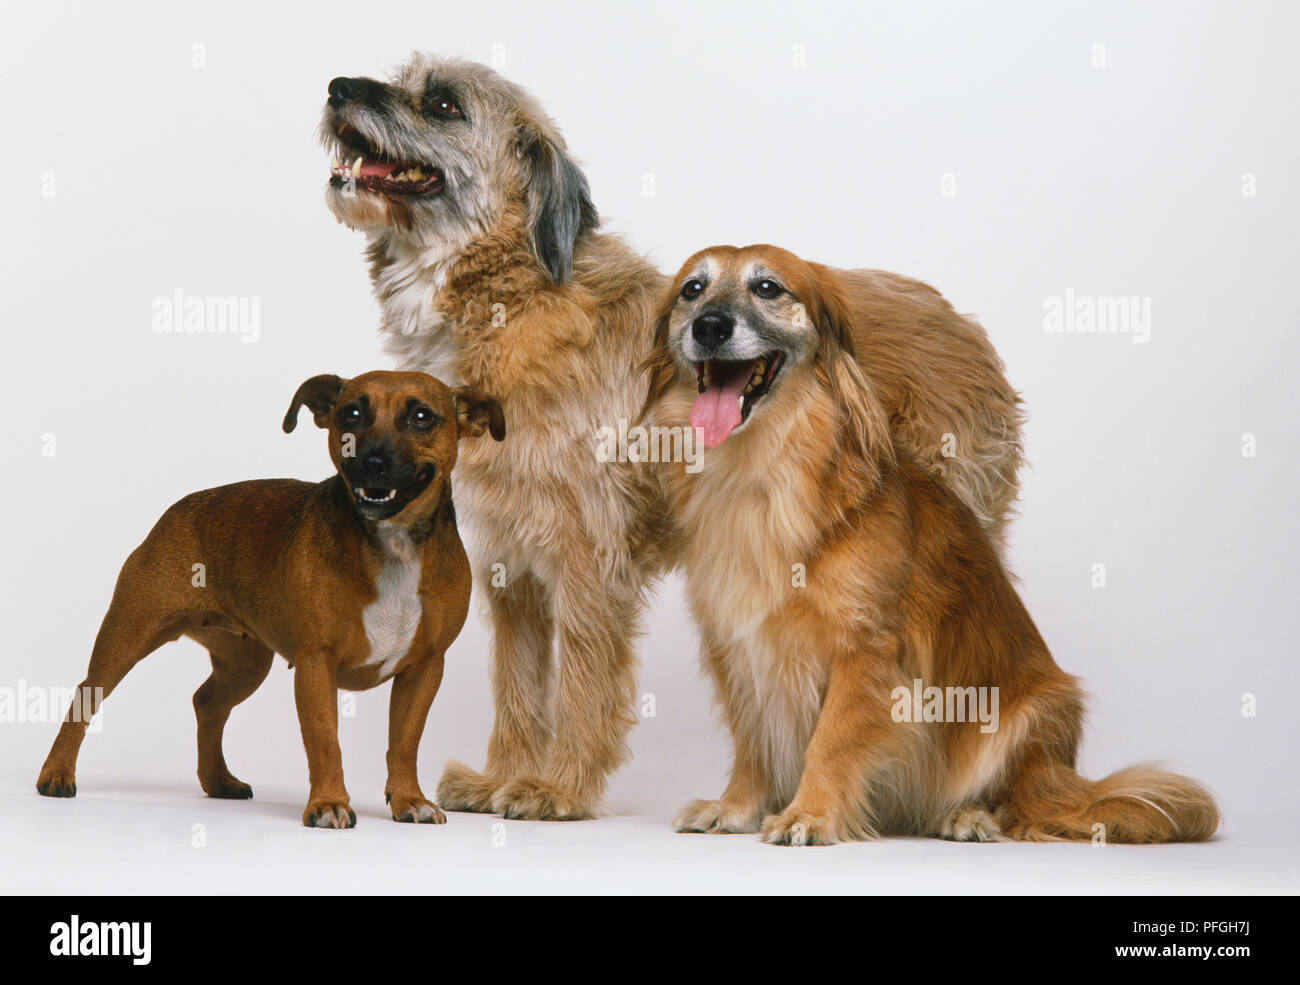 Gruppe von drei Mongrels (Canis familiaris), shaggy - behaarter Hund stehend, glatte langhaarigen Hund sitzen und kleine kurze Haare Hund stehen. Stockfoto